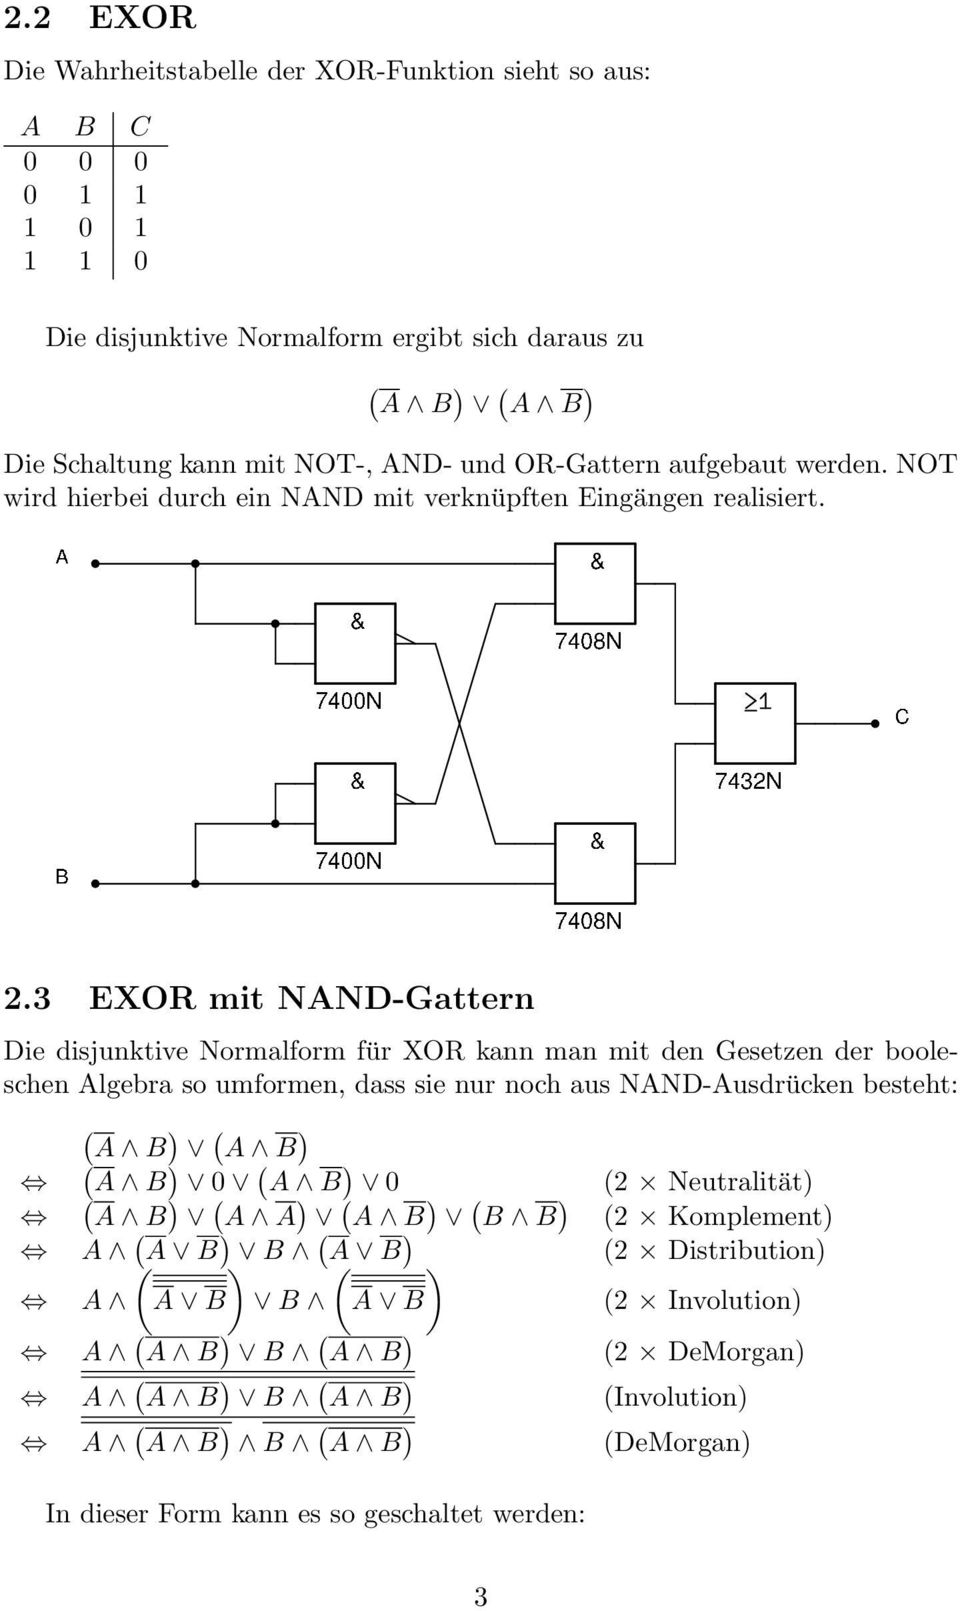 3 EXOR mit NAND-Gattern Die disjunktive Normalform für XOR kann man mit den Gesetzen der booleschen Algebra so umformen, dass sie nur noch aus NAND-Ausdrücken besteht: ( A B ) ( A B ) ( A B ) 0